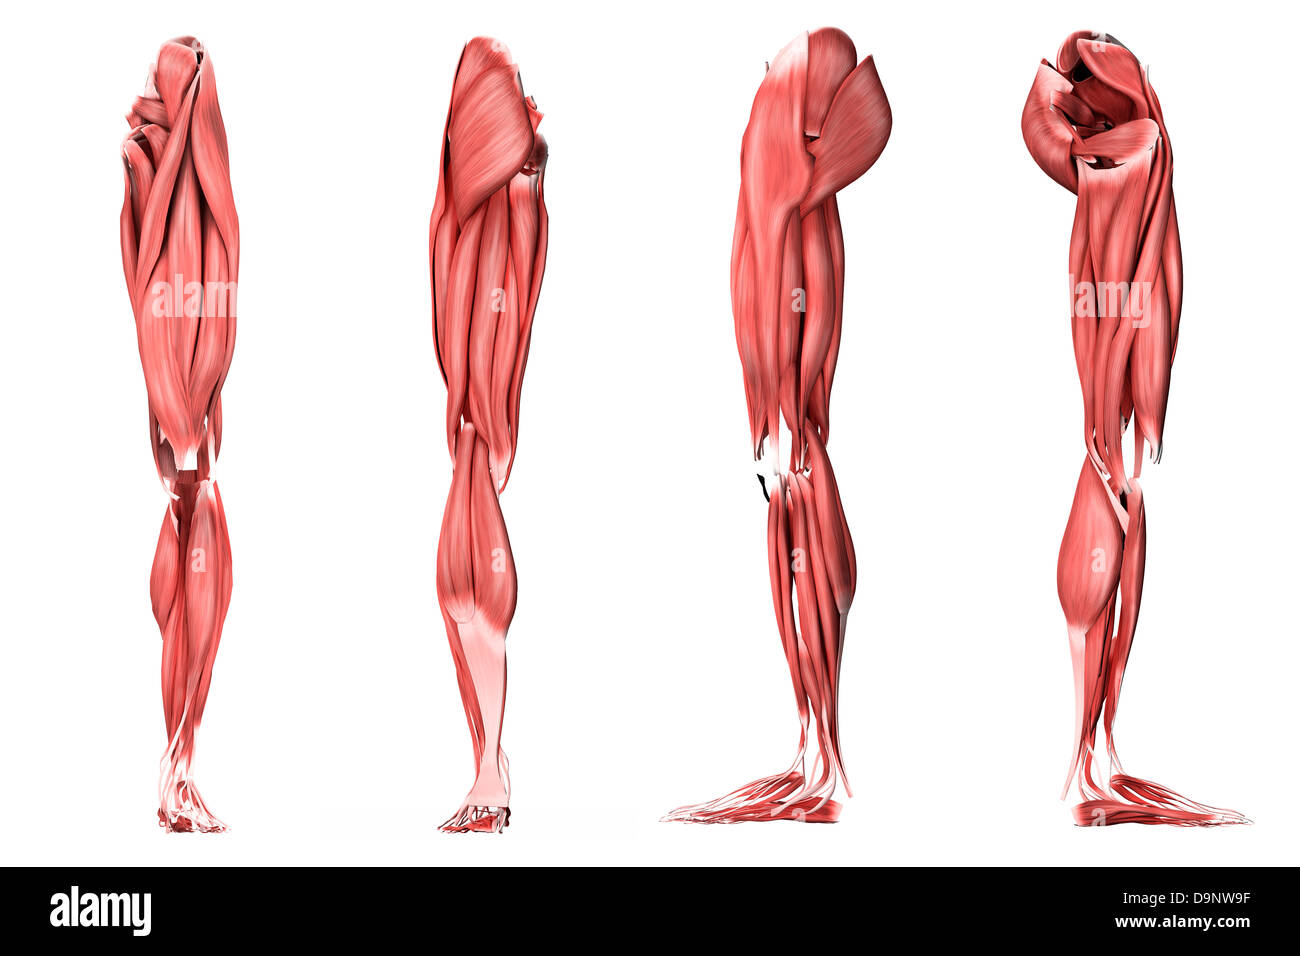 Illustrazione medica della gamba umana muscoli, quattro viste laterali. Foto Stock